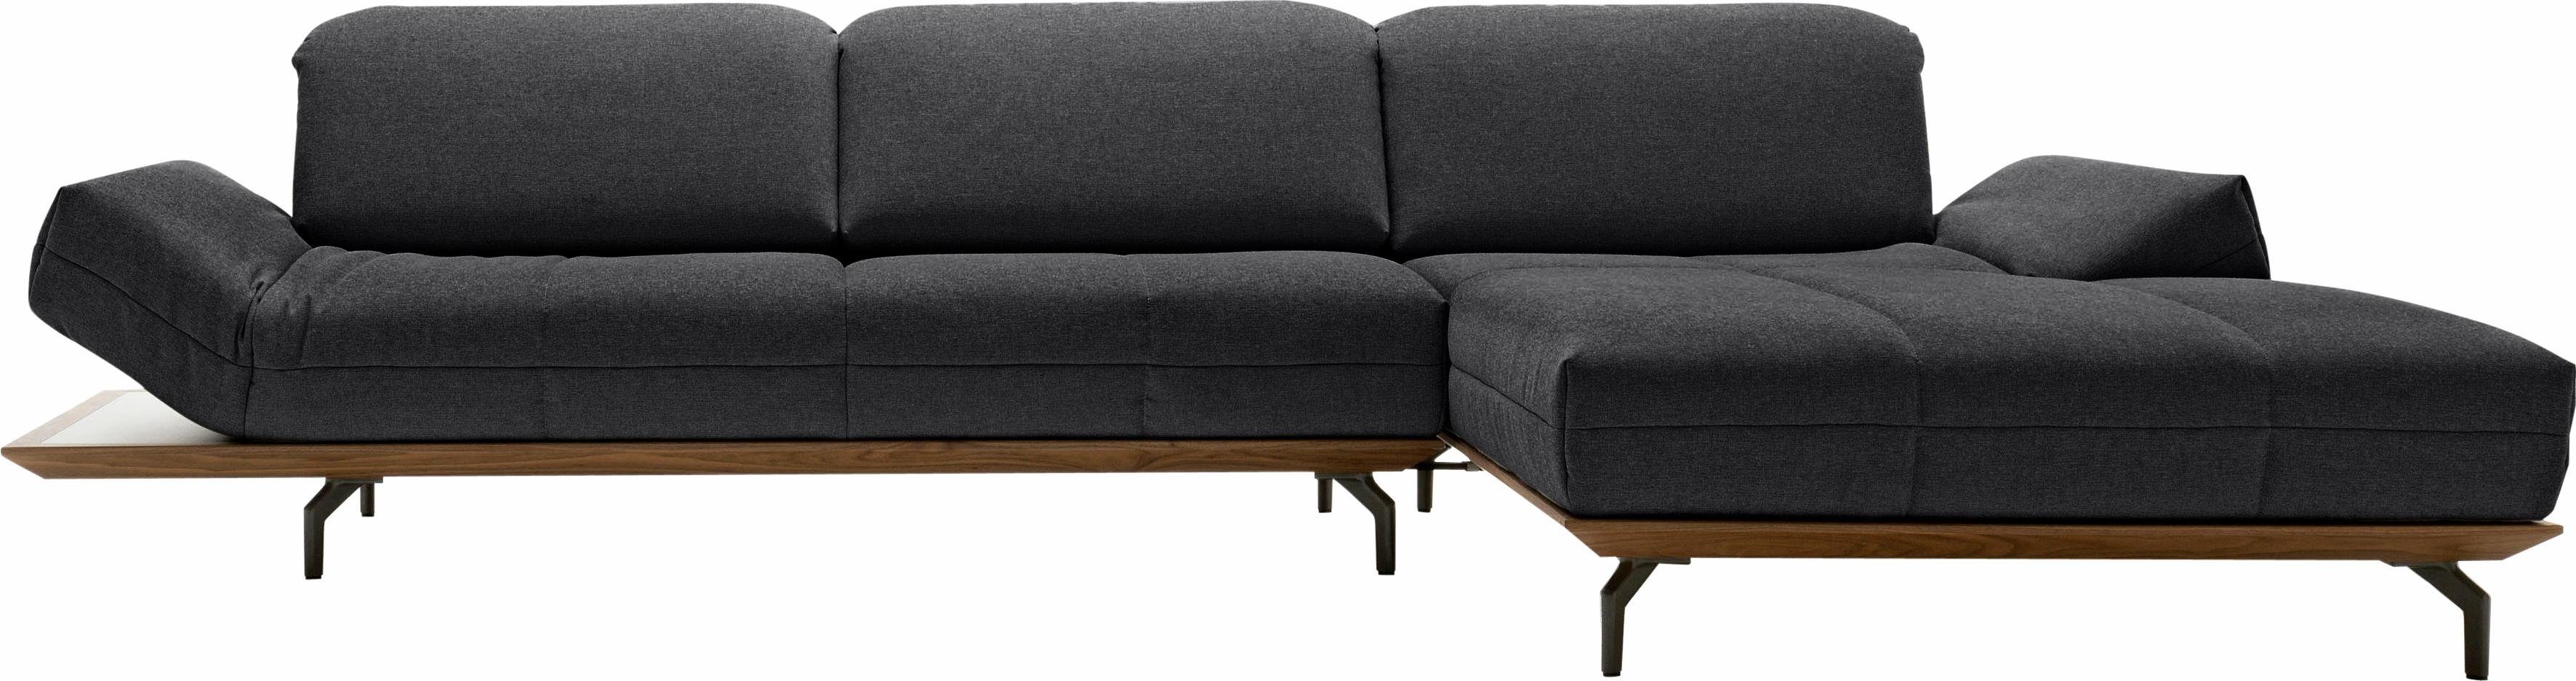 Eiche sofa Holzrahmen cm hülsta 2 in oder Natur Ecksofa 293 Nußbaum, Breite in Qualitäten, hs.420,